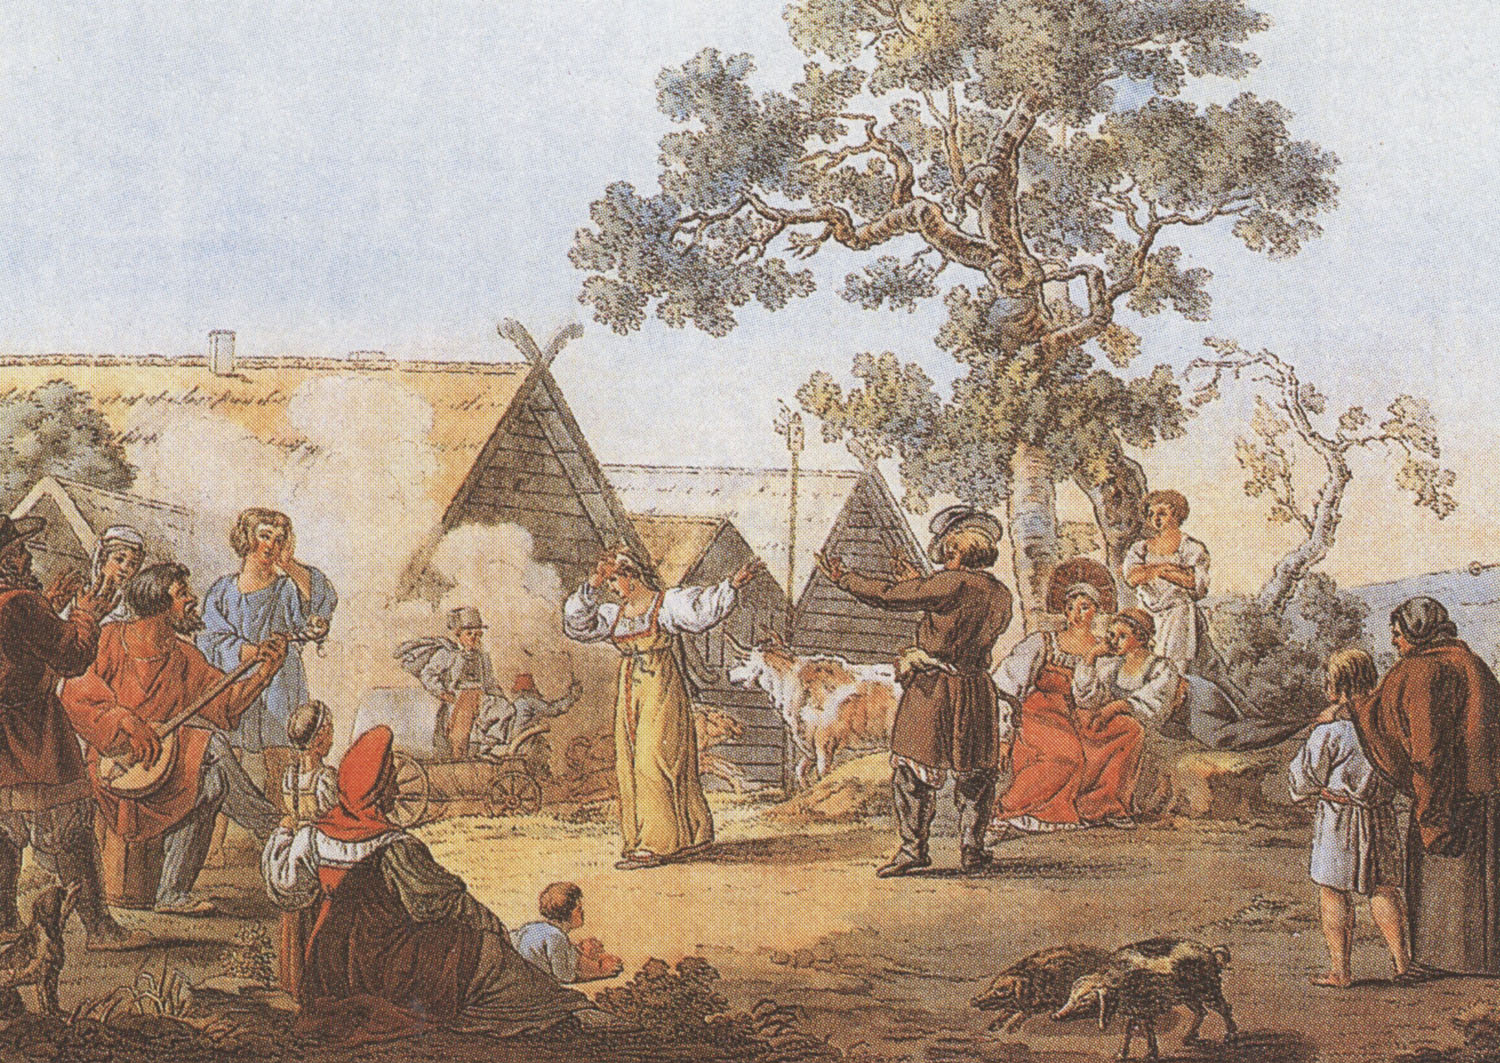 Е. Корнеев. "Русская пляска". 1812.